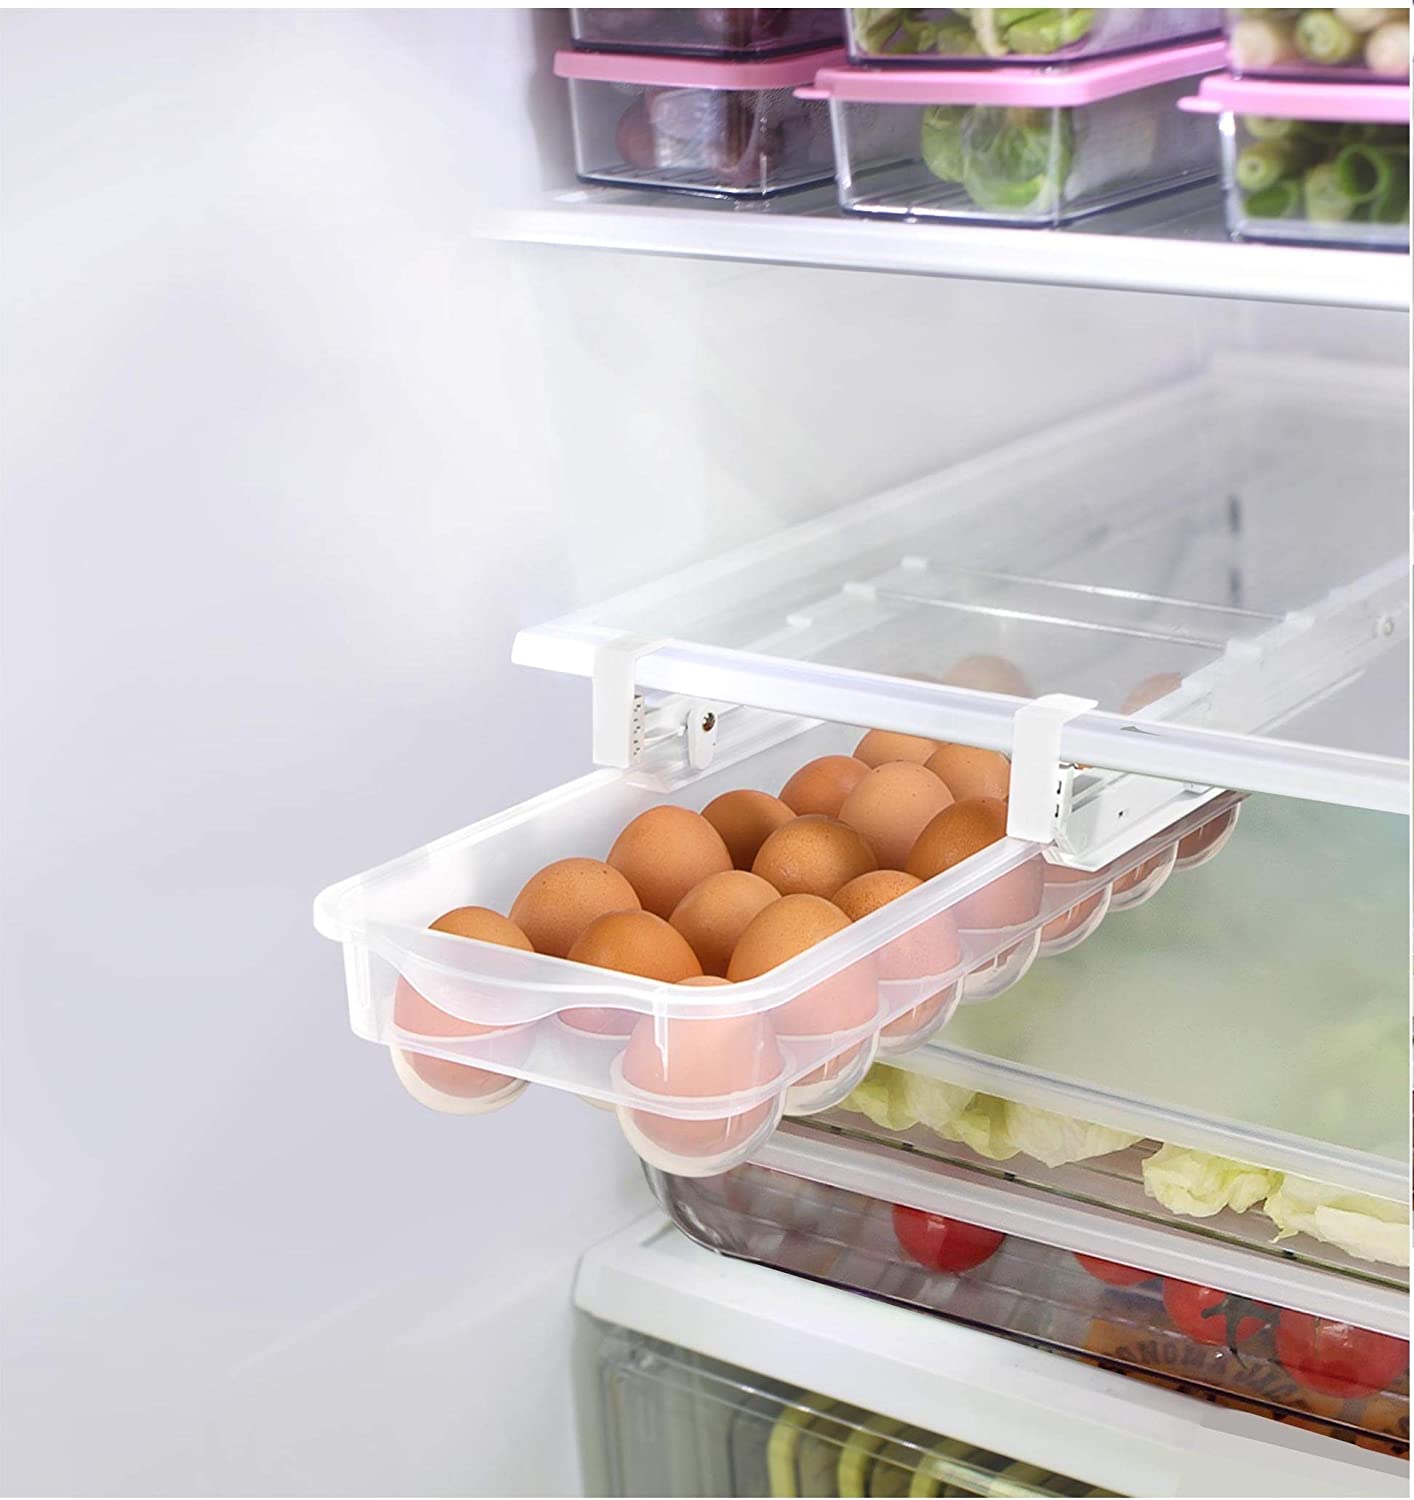 SEZN Fridge Egg Holder, Pull Out Refrigerator Drawer Organizers Fridge Shelf Holder